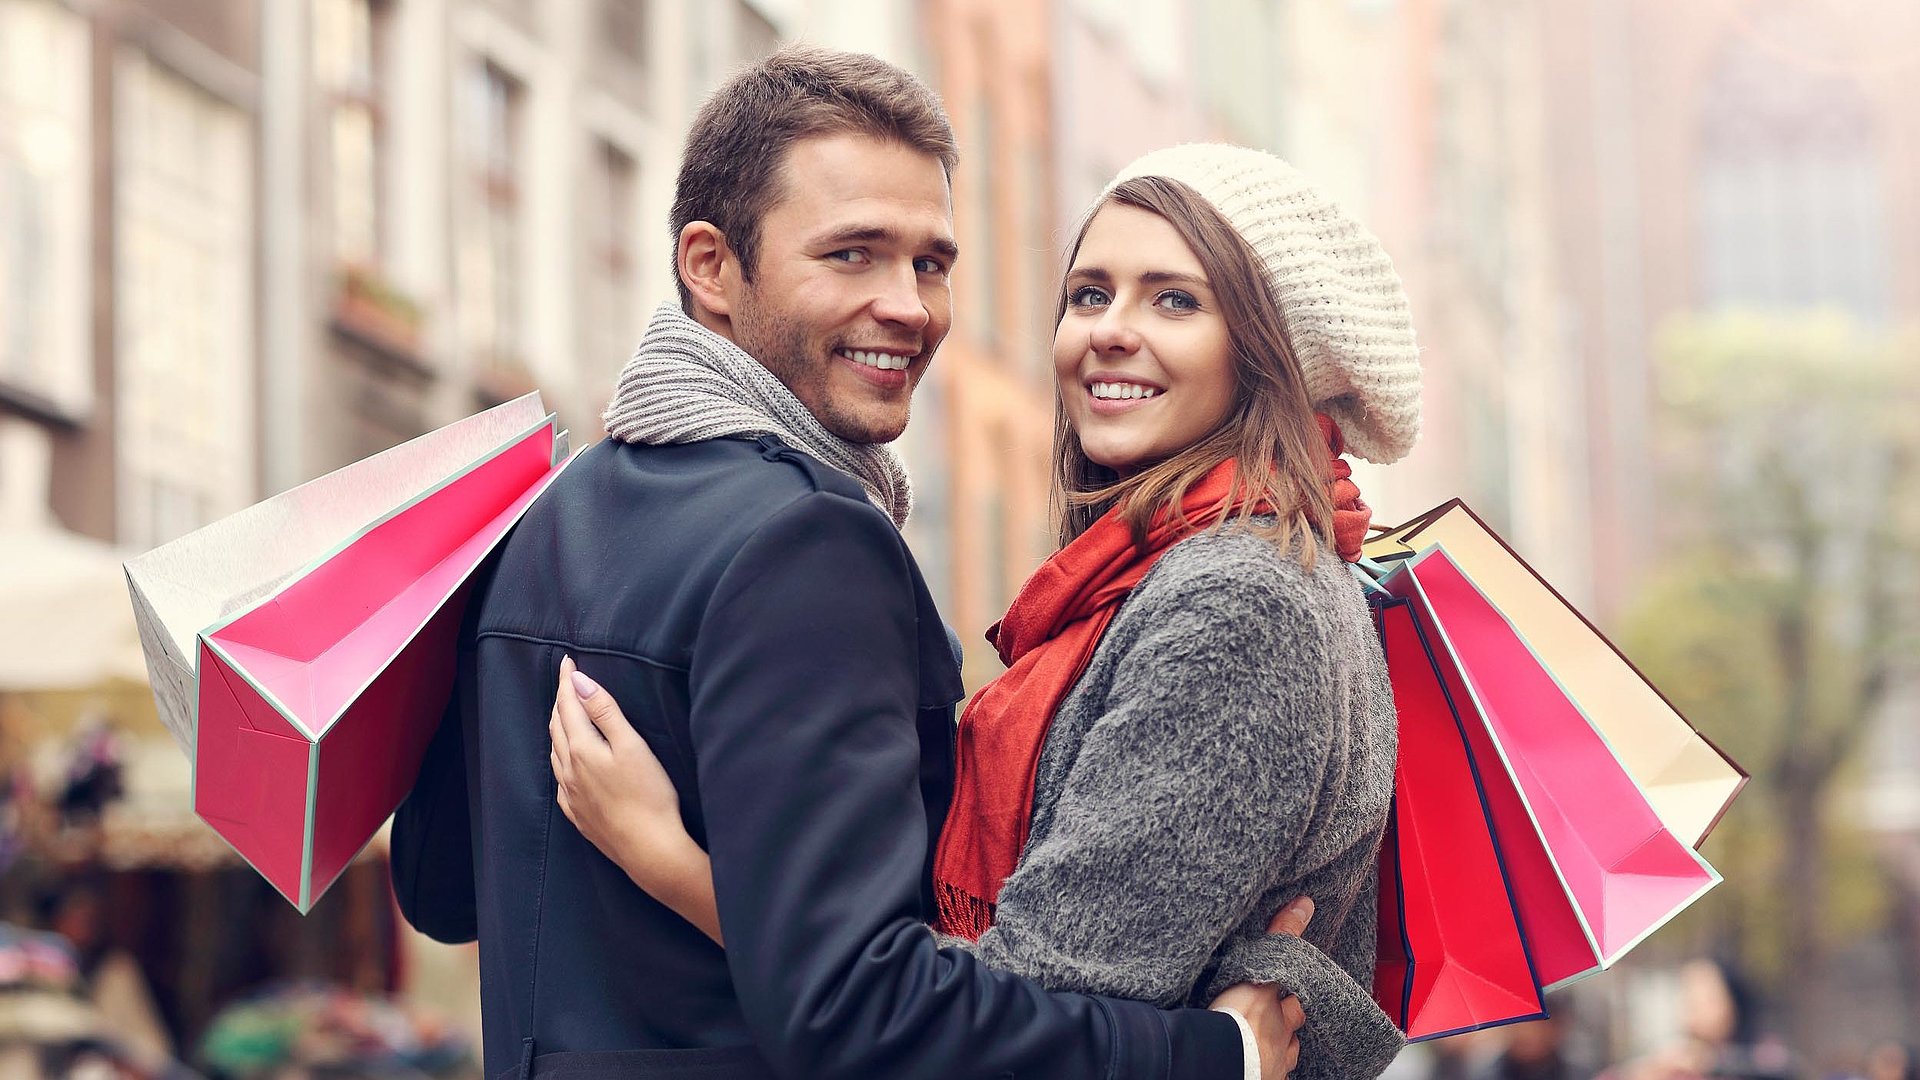 Einkaufen in Mittelfranken - junges Paar mit Einkaufstüten lächelt in die Kamera